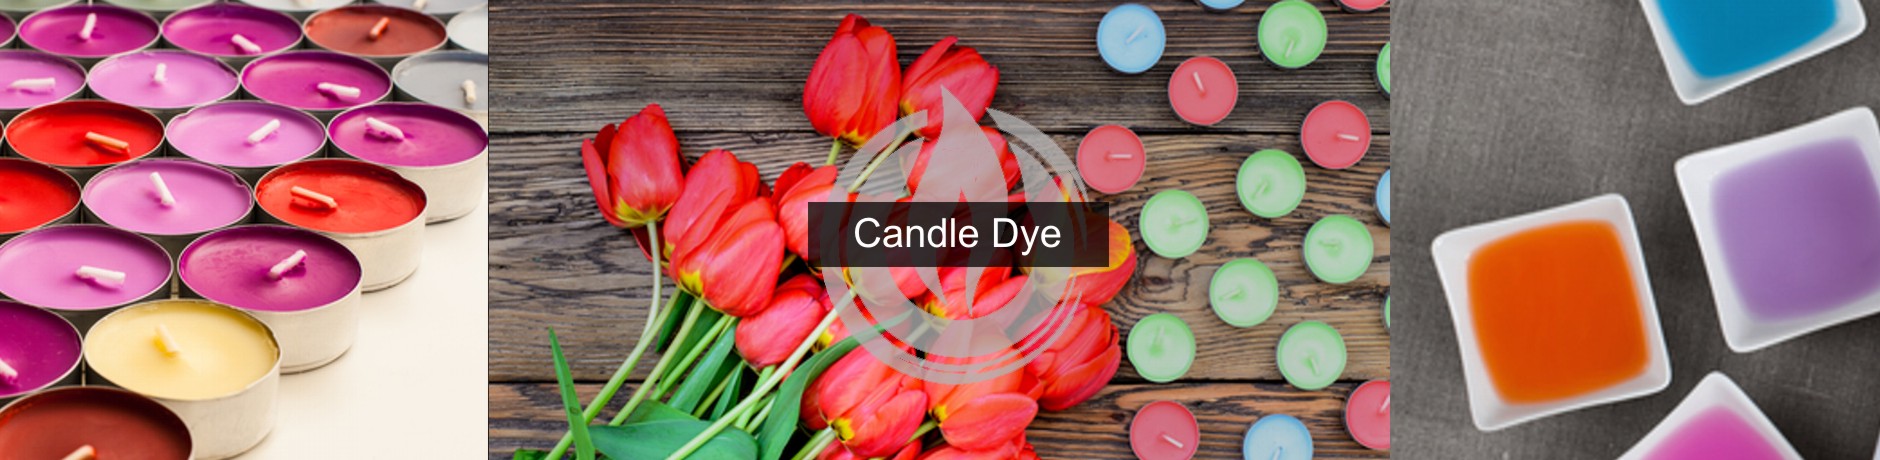 candle-dye-banner.jpg